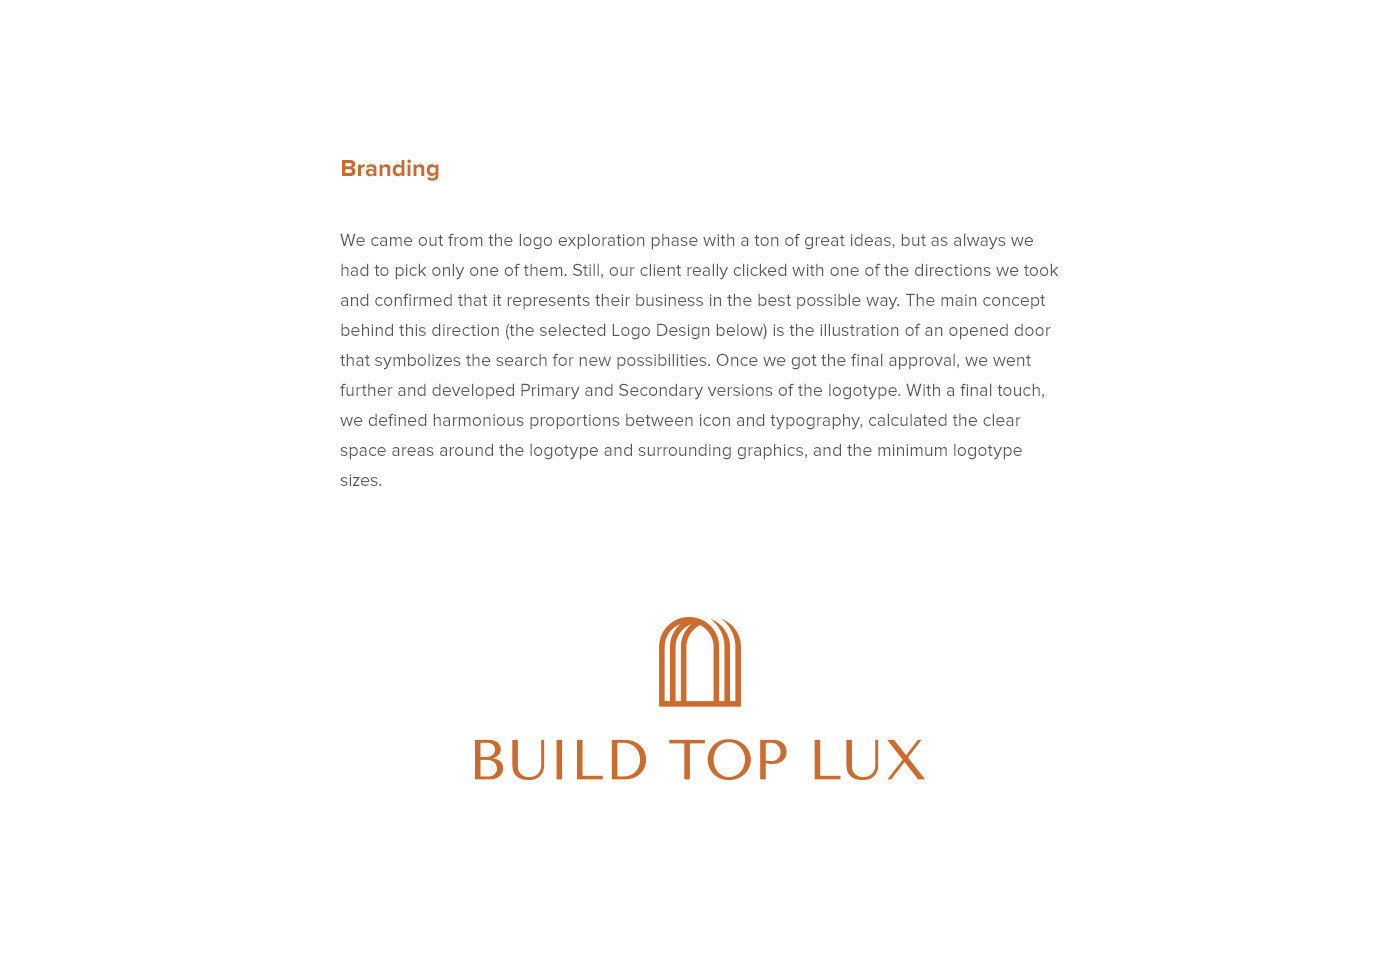 房地产代理商Build Top Lux品牌视觉形象设计